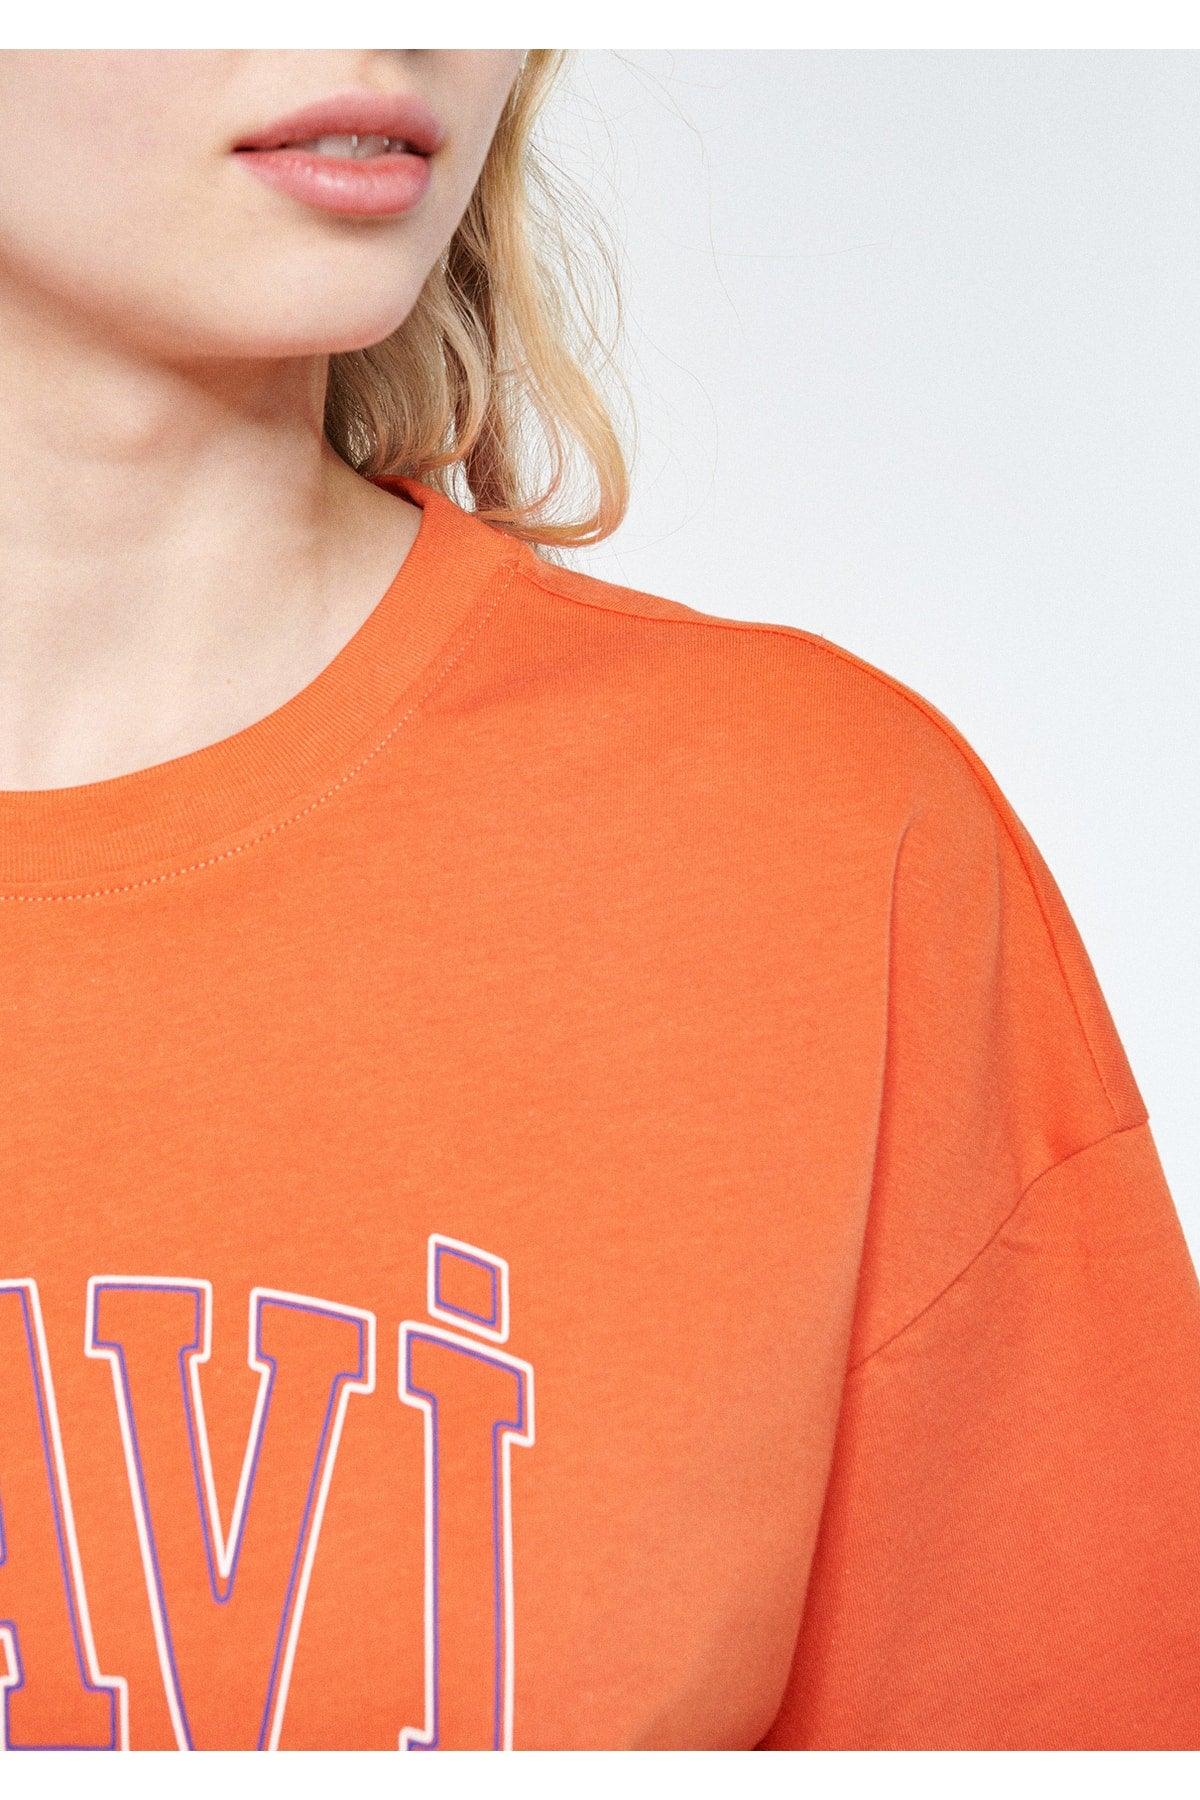 Logo Printed Orange T-Shirt Regular Fit / Normal Cut 1611193-70485 - Swordslife